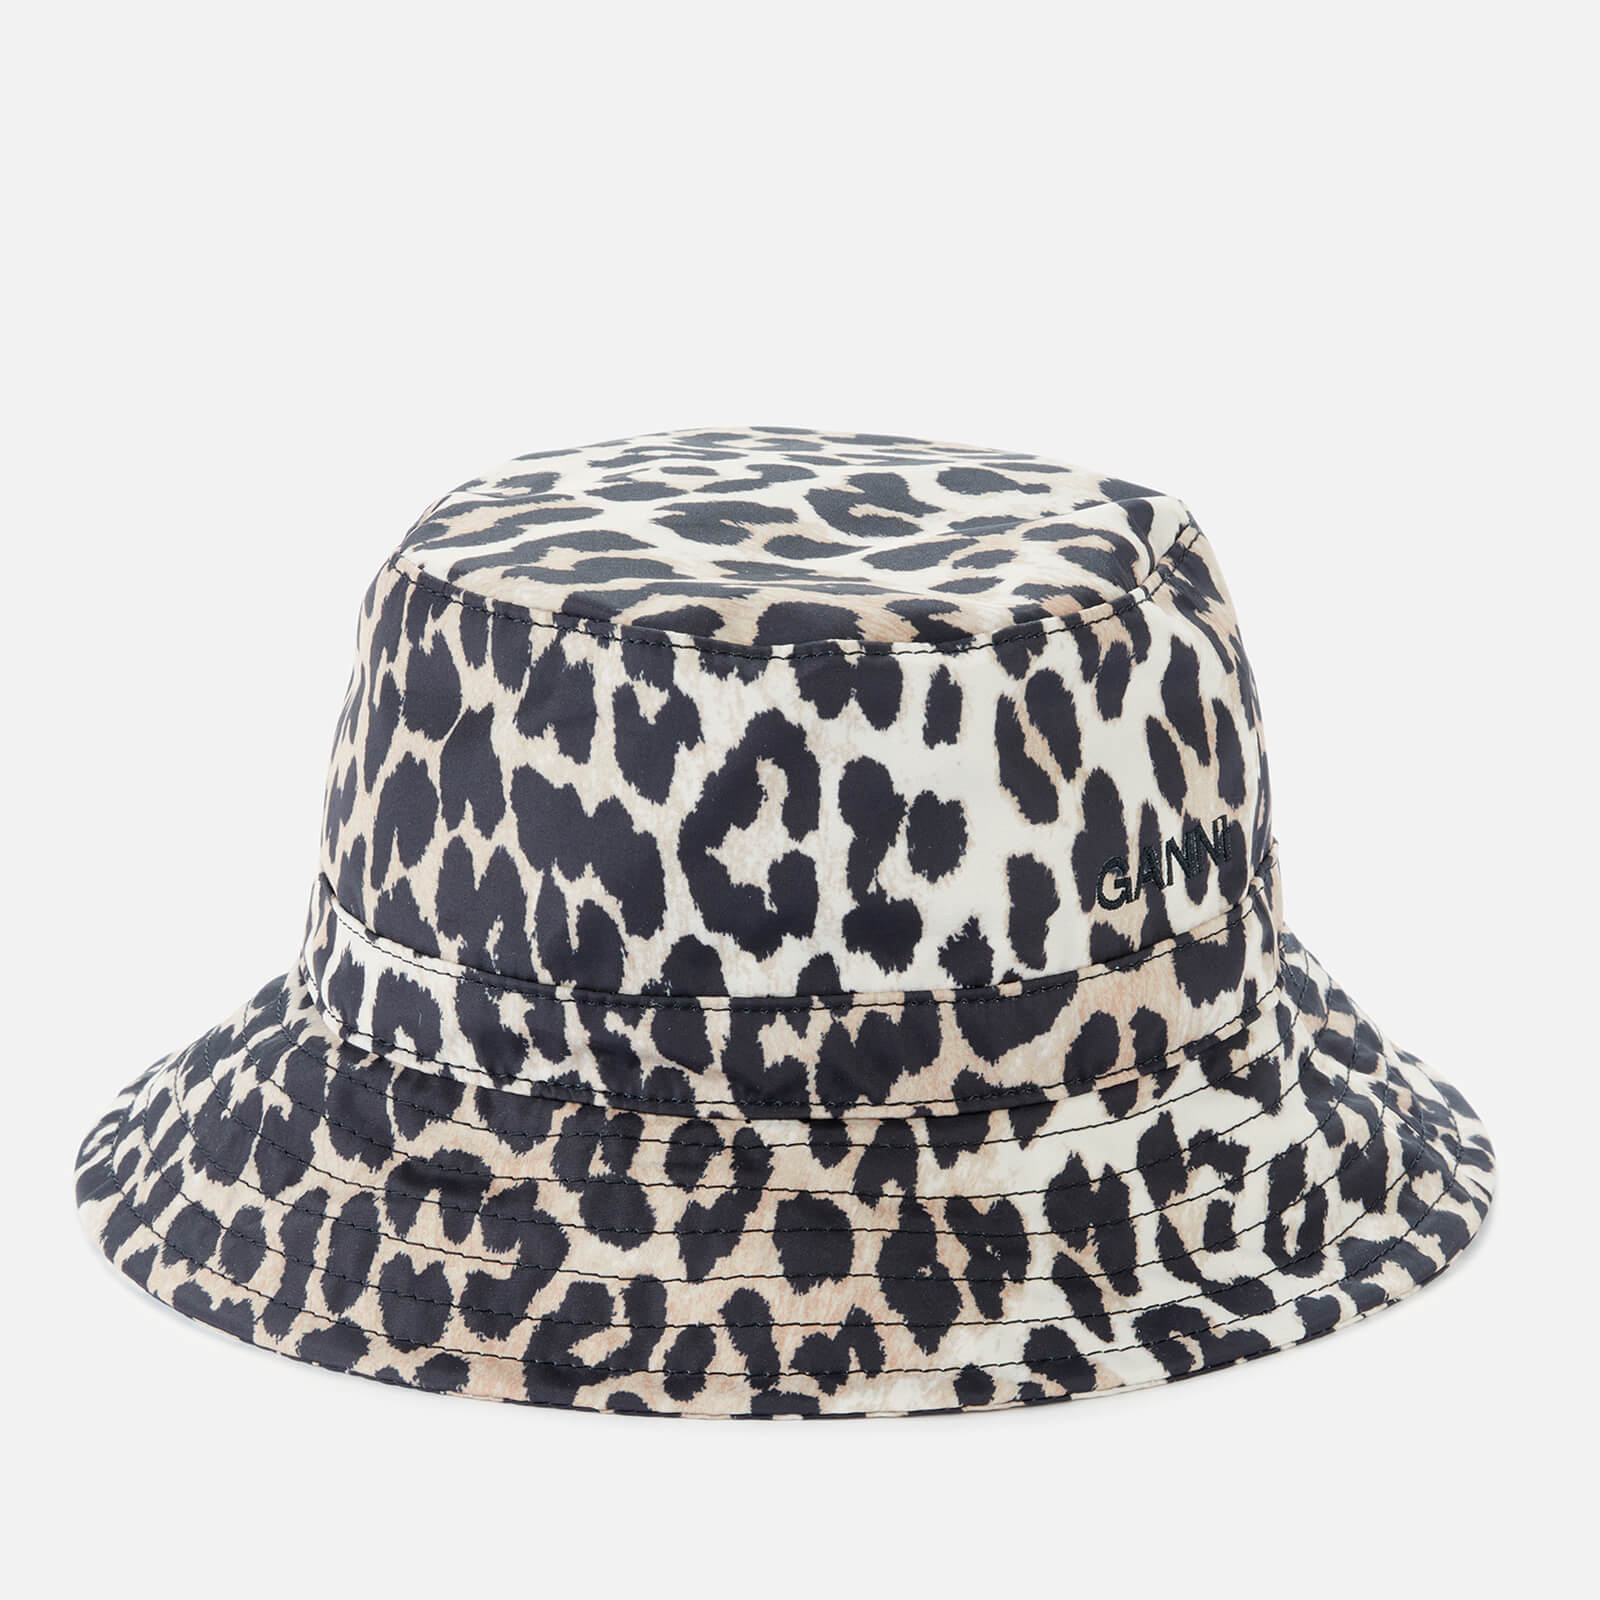 Ganni Women's Leopard Print Bucket Hat - Multi - XS/S